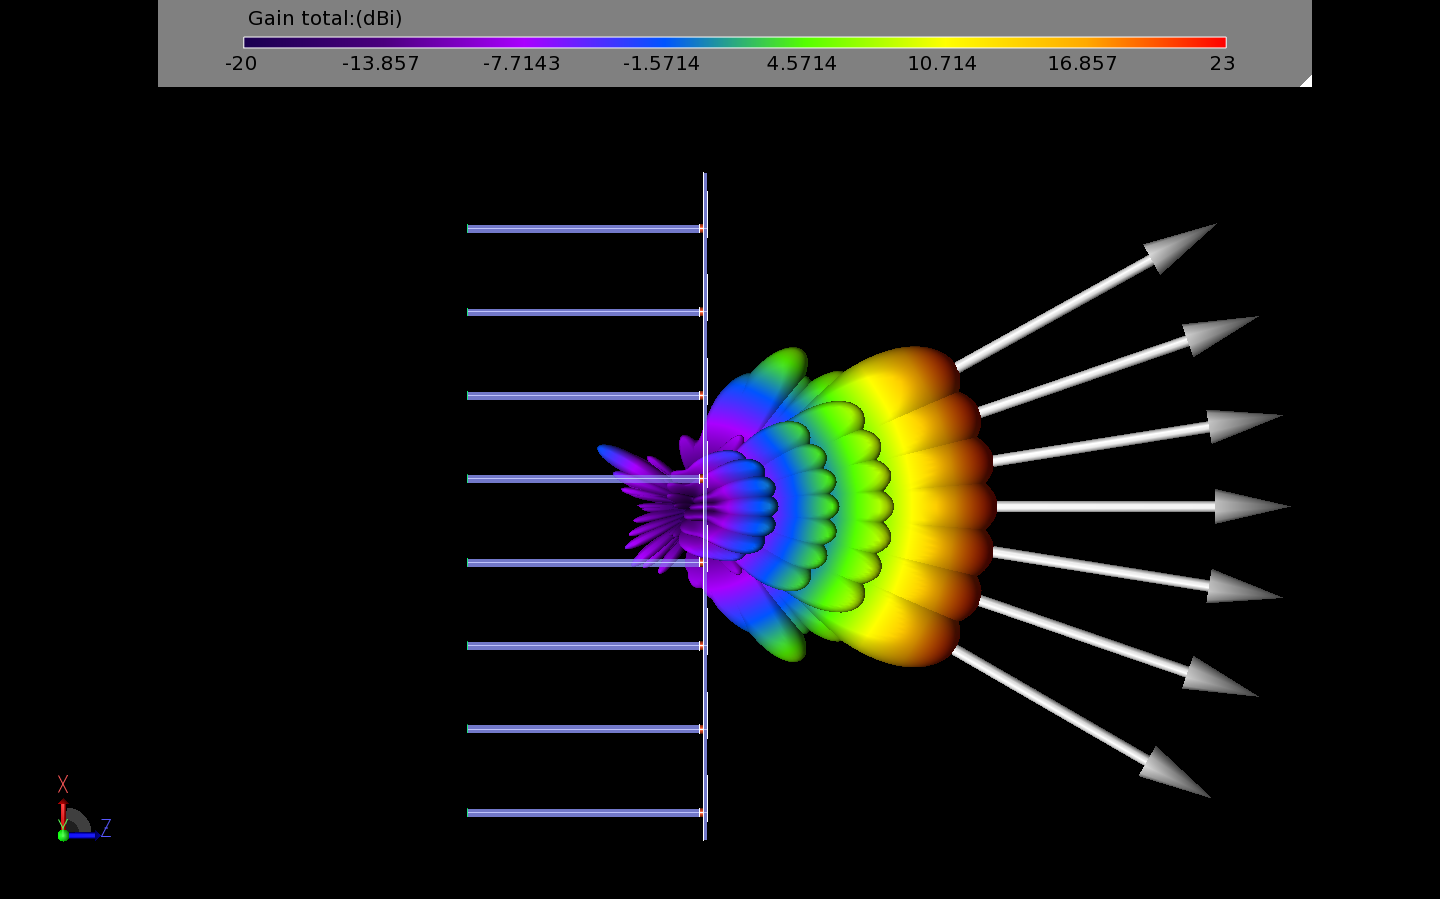 Abbildung 12: Diese Abbildung zeigt die sieben Strahlen als dreidimensionales Muster und nicht als Liniendiagramm wie Abbildung 11. Die großen weißen Pfeile zeigen die Richtung der Spitzenverstärkung für jeden Strahl an.